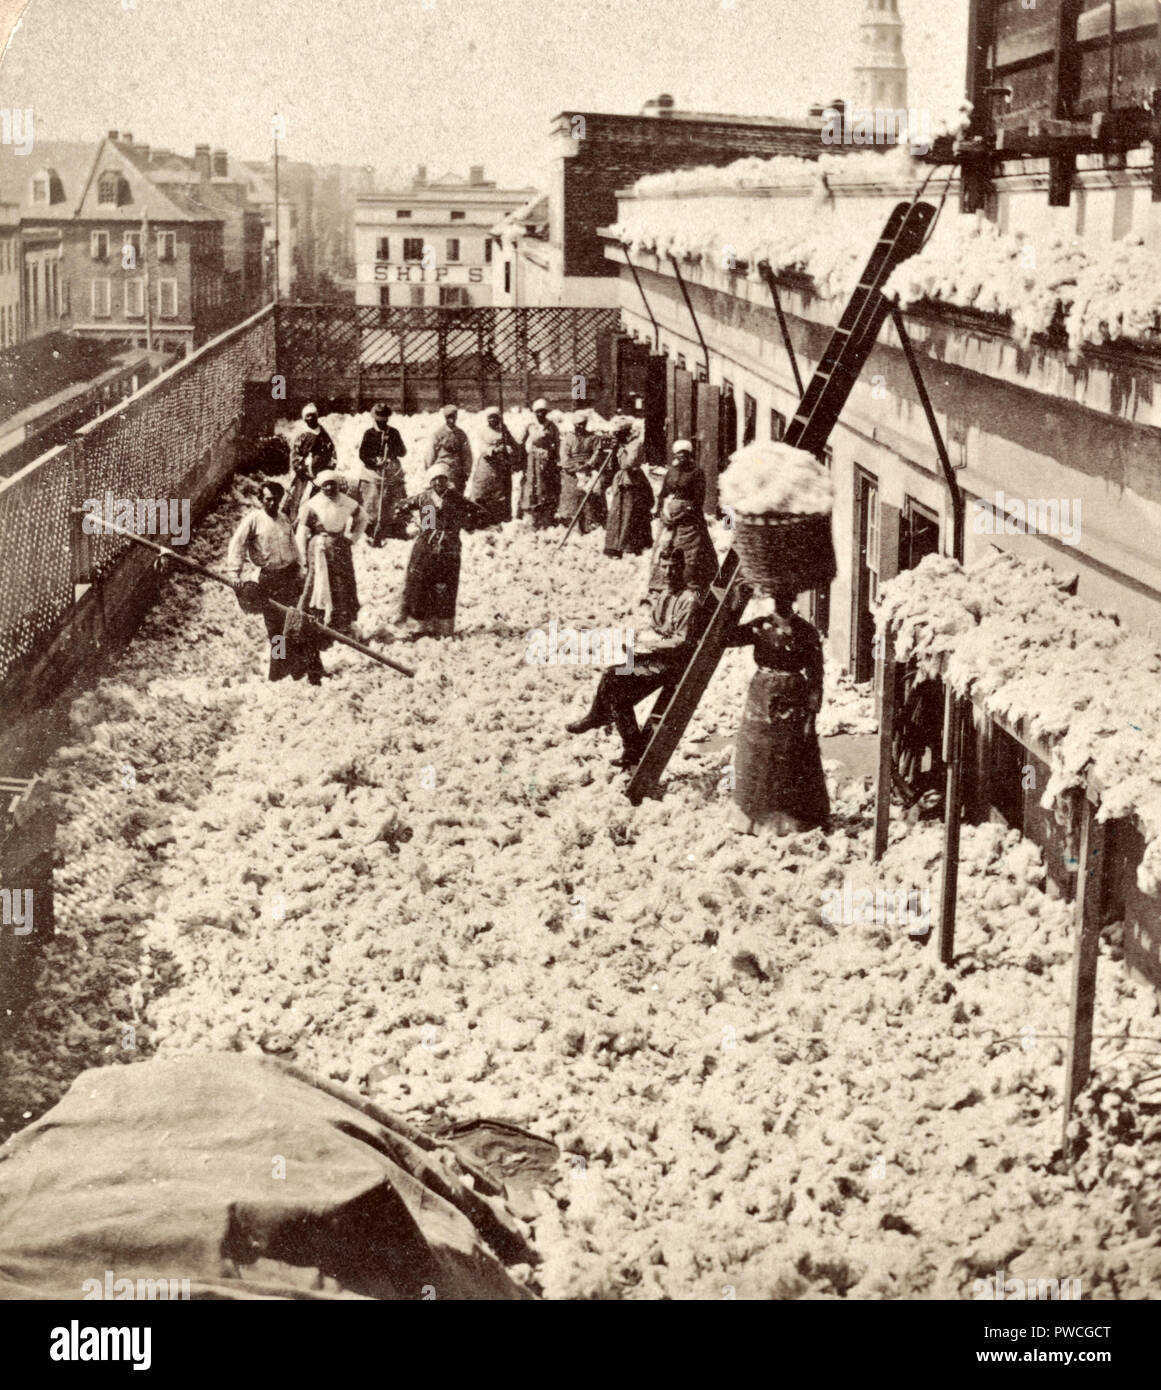 Magazzino di cotone, l'asciugatura cotone, Charleston S.C. - Americani africani, soprattutto donne, con due uomini bianchi sul tetto del magazzino di cotone, circondato da asciugatura cotone. 1879 Foto Stock